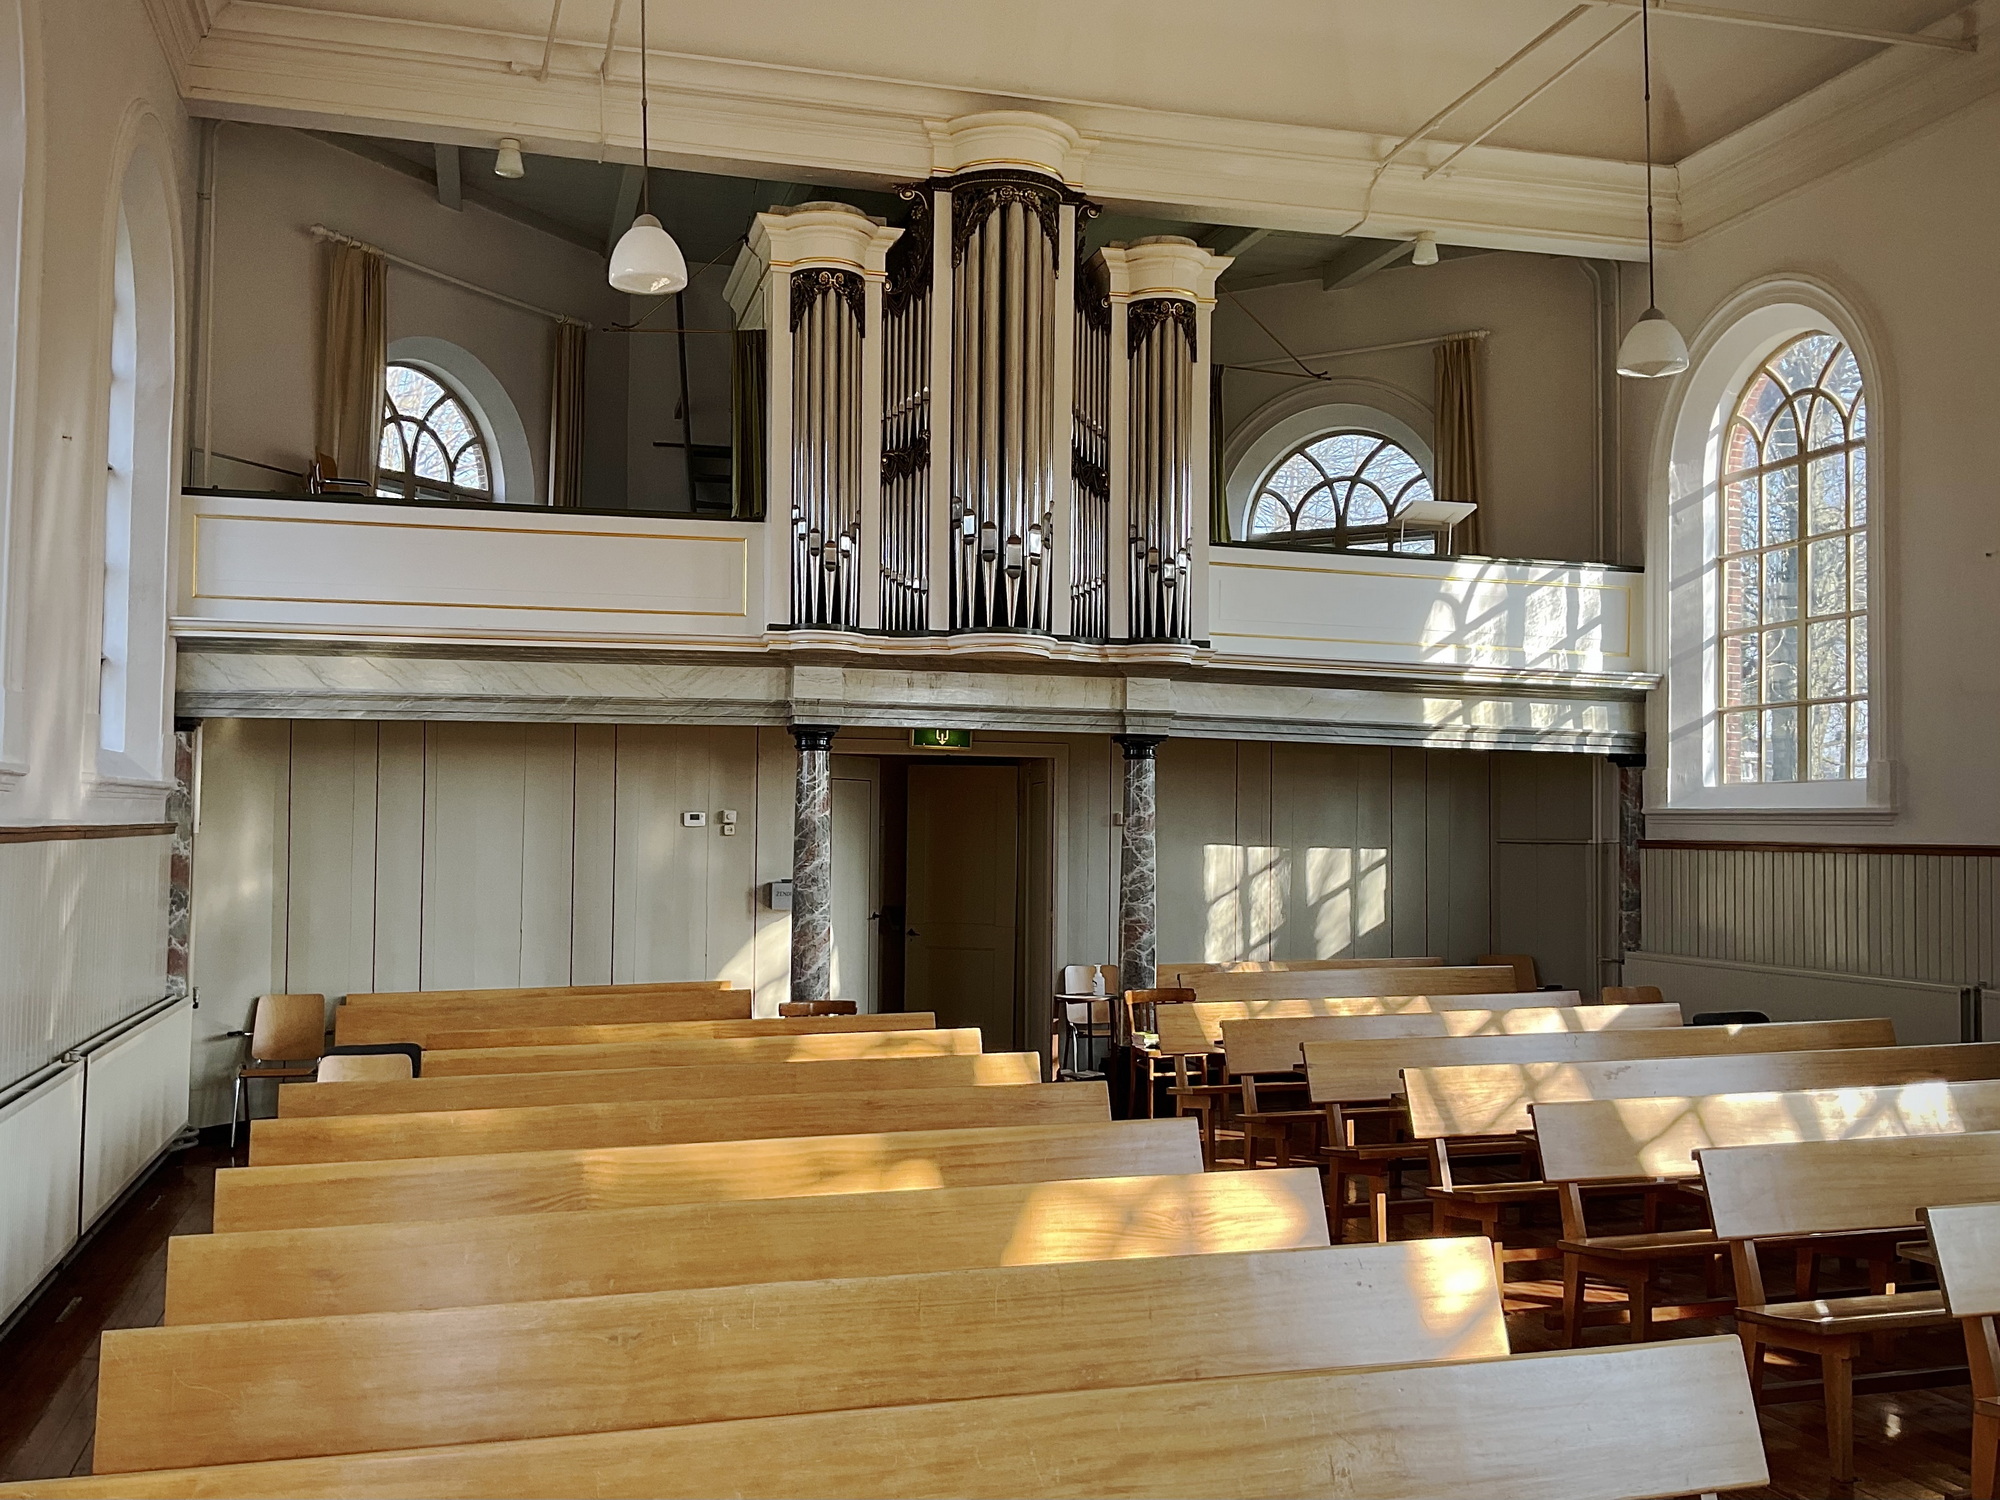 Interieur met orgel gezien naar het zuidoosten. Foto: ©Jur Kuipers.